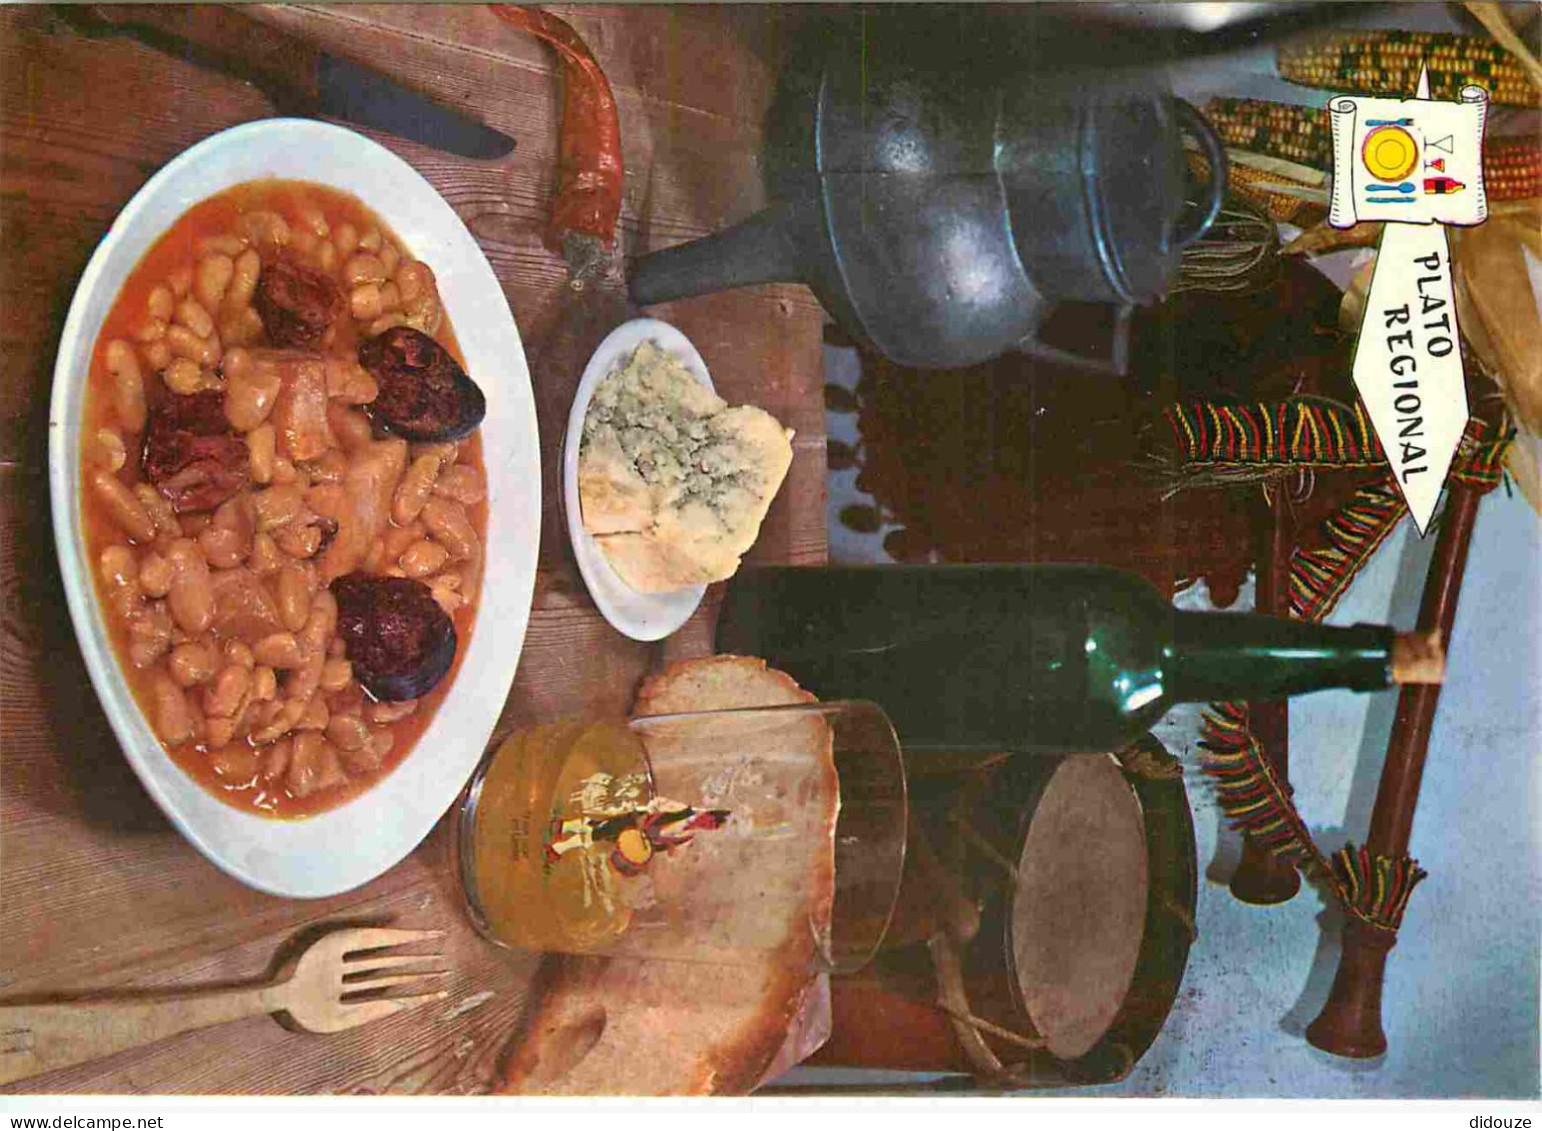 Recettes De Cuisine - Fabada Asturiana - Gastronomie - CPM - Voir Scans Recto-Verso - Recettes (cuisine)